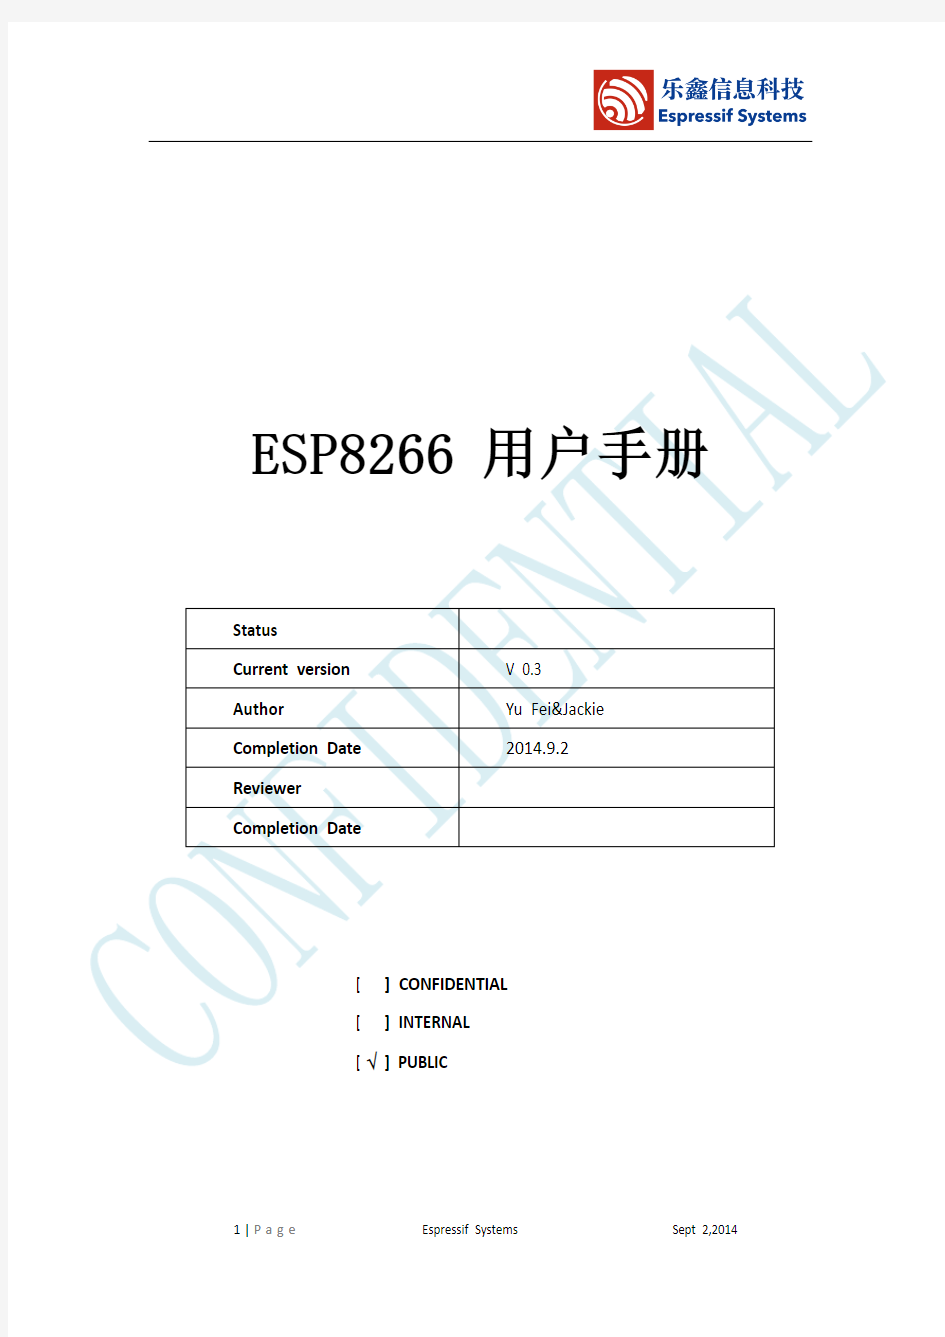 ESP8266_用户手册_V0.3